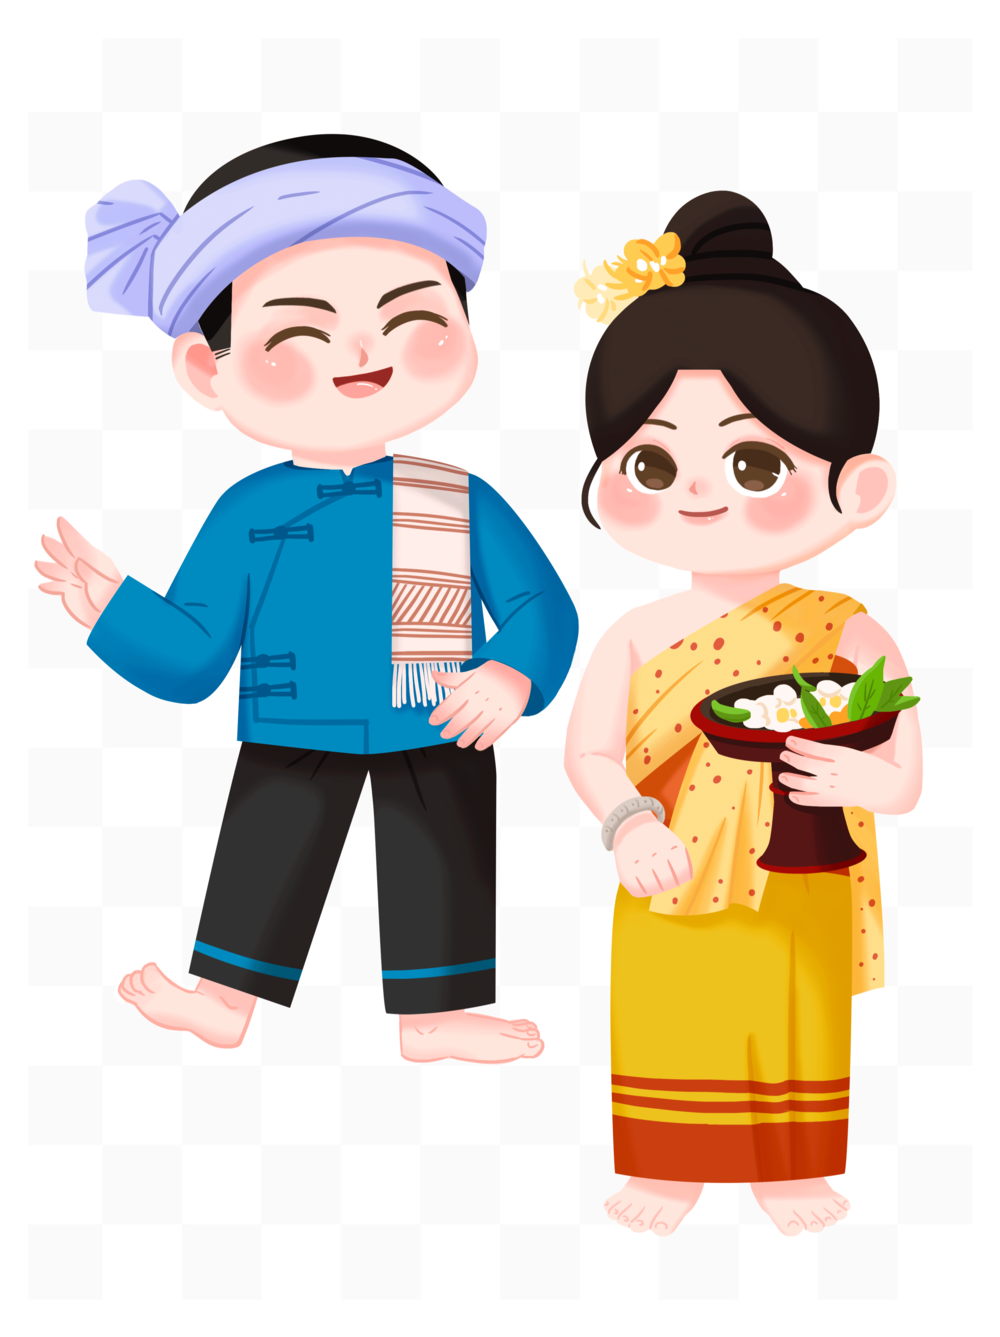 傣族卡通人物Q版图片